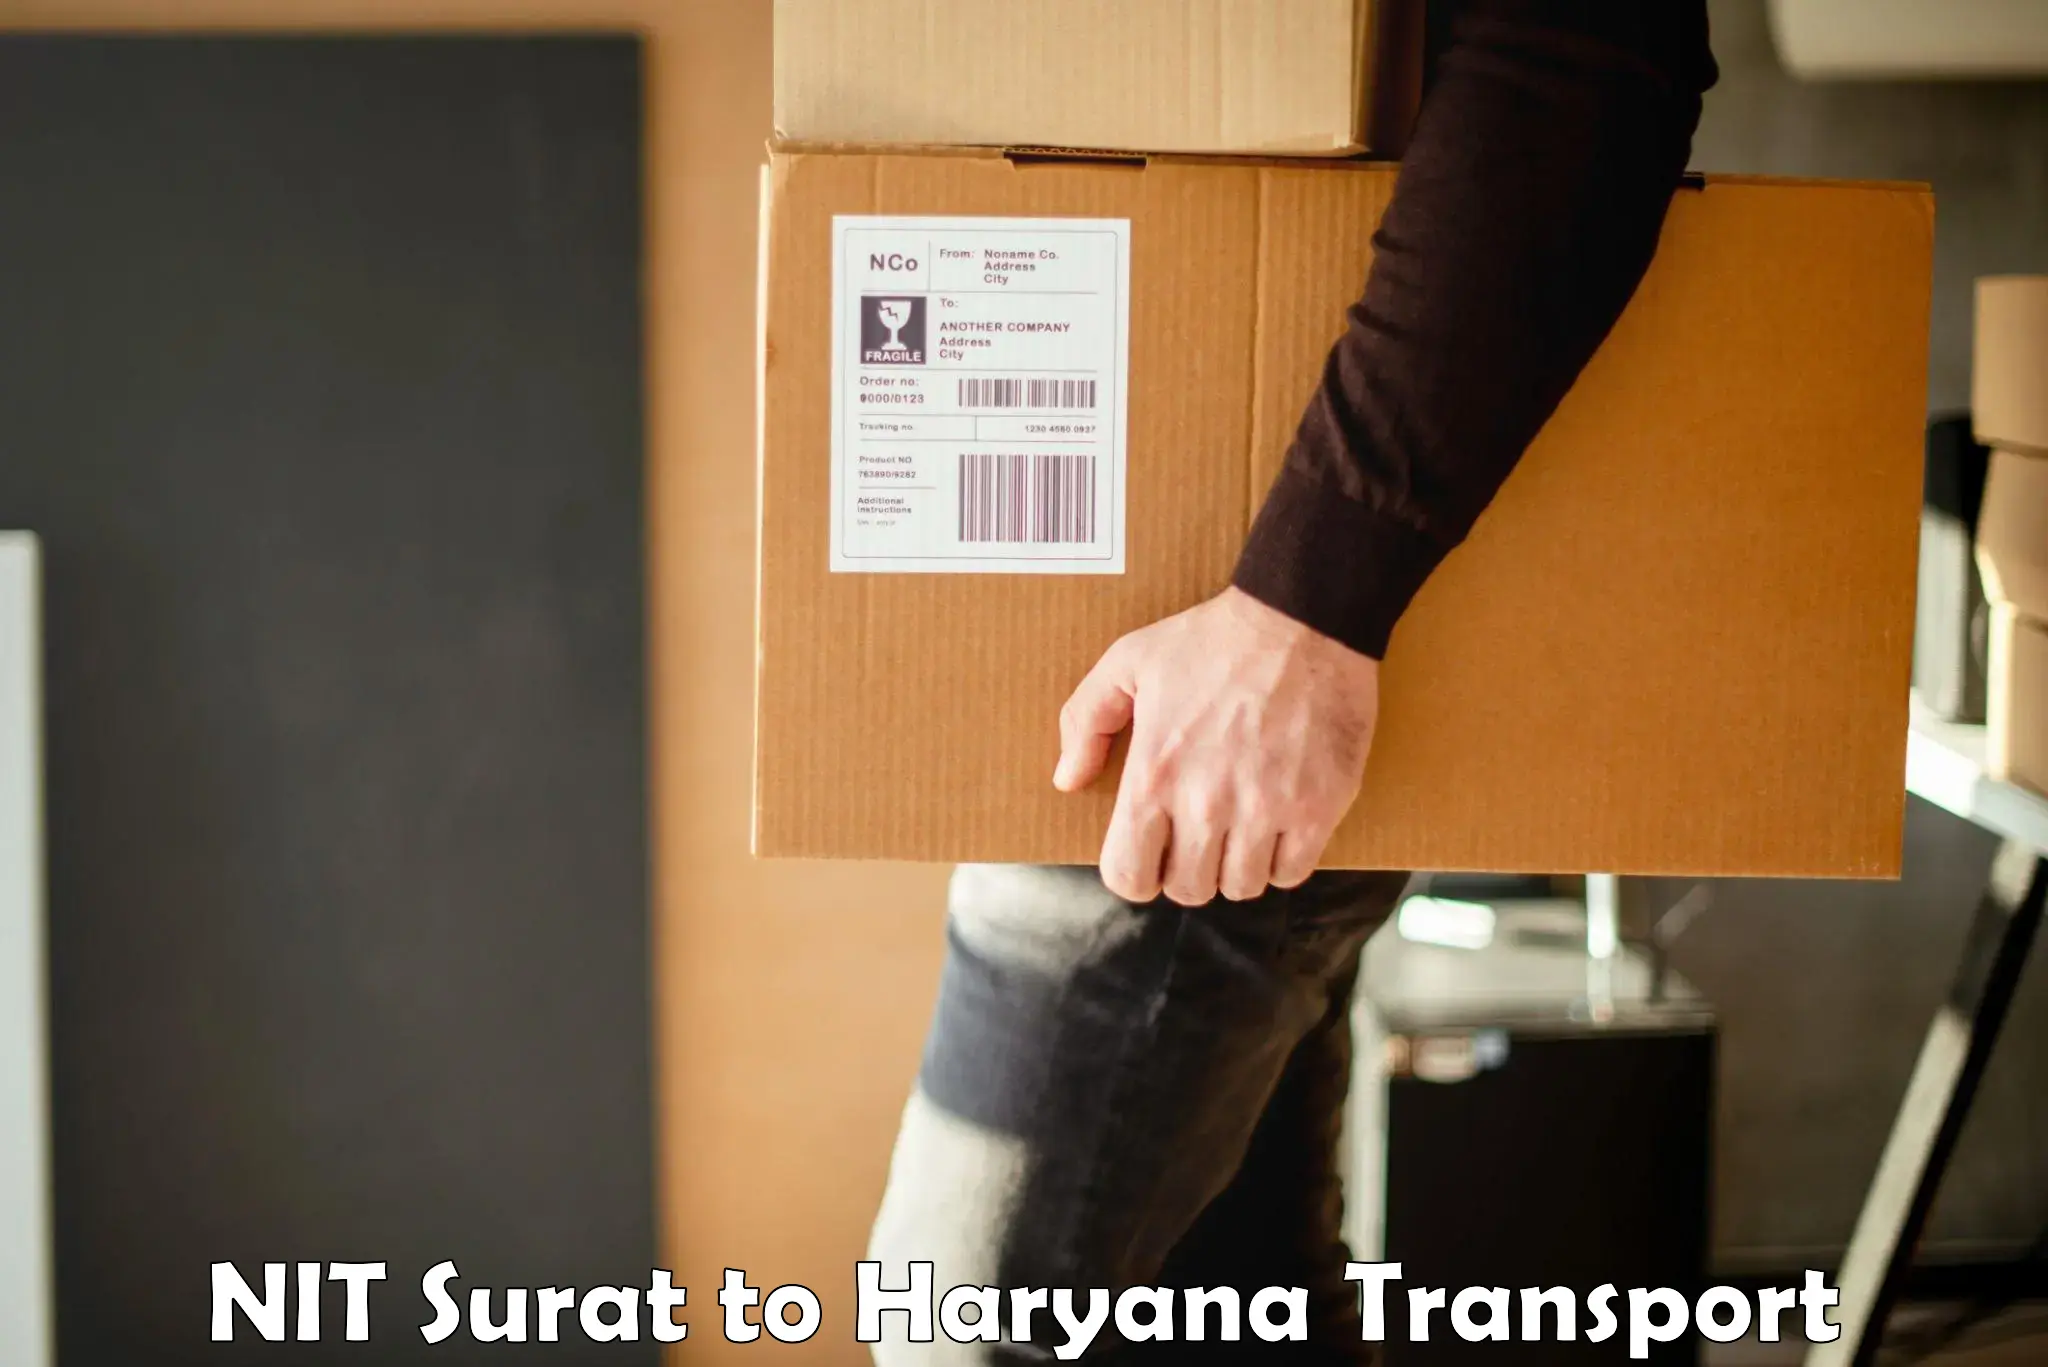 Commercial transport service NIT Surat to NIT Kurukshetra